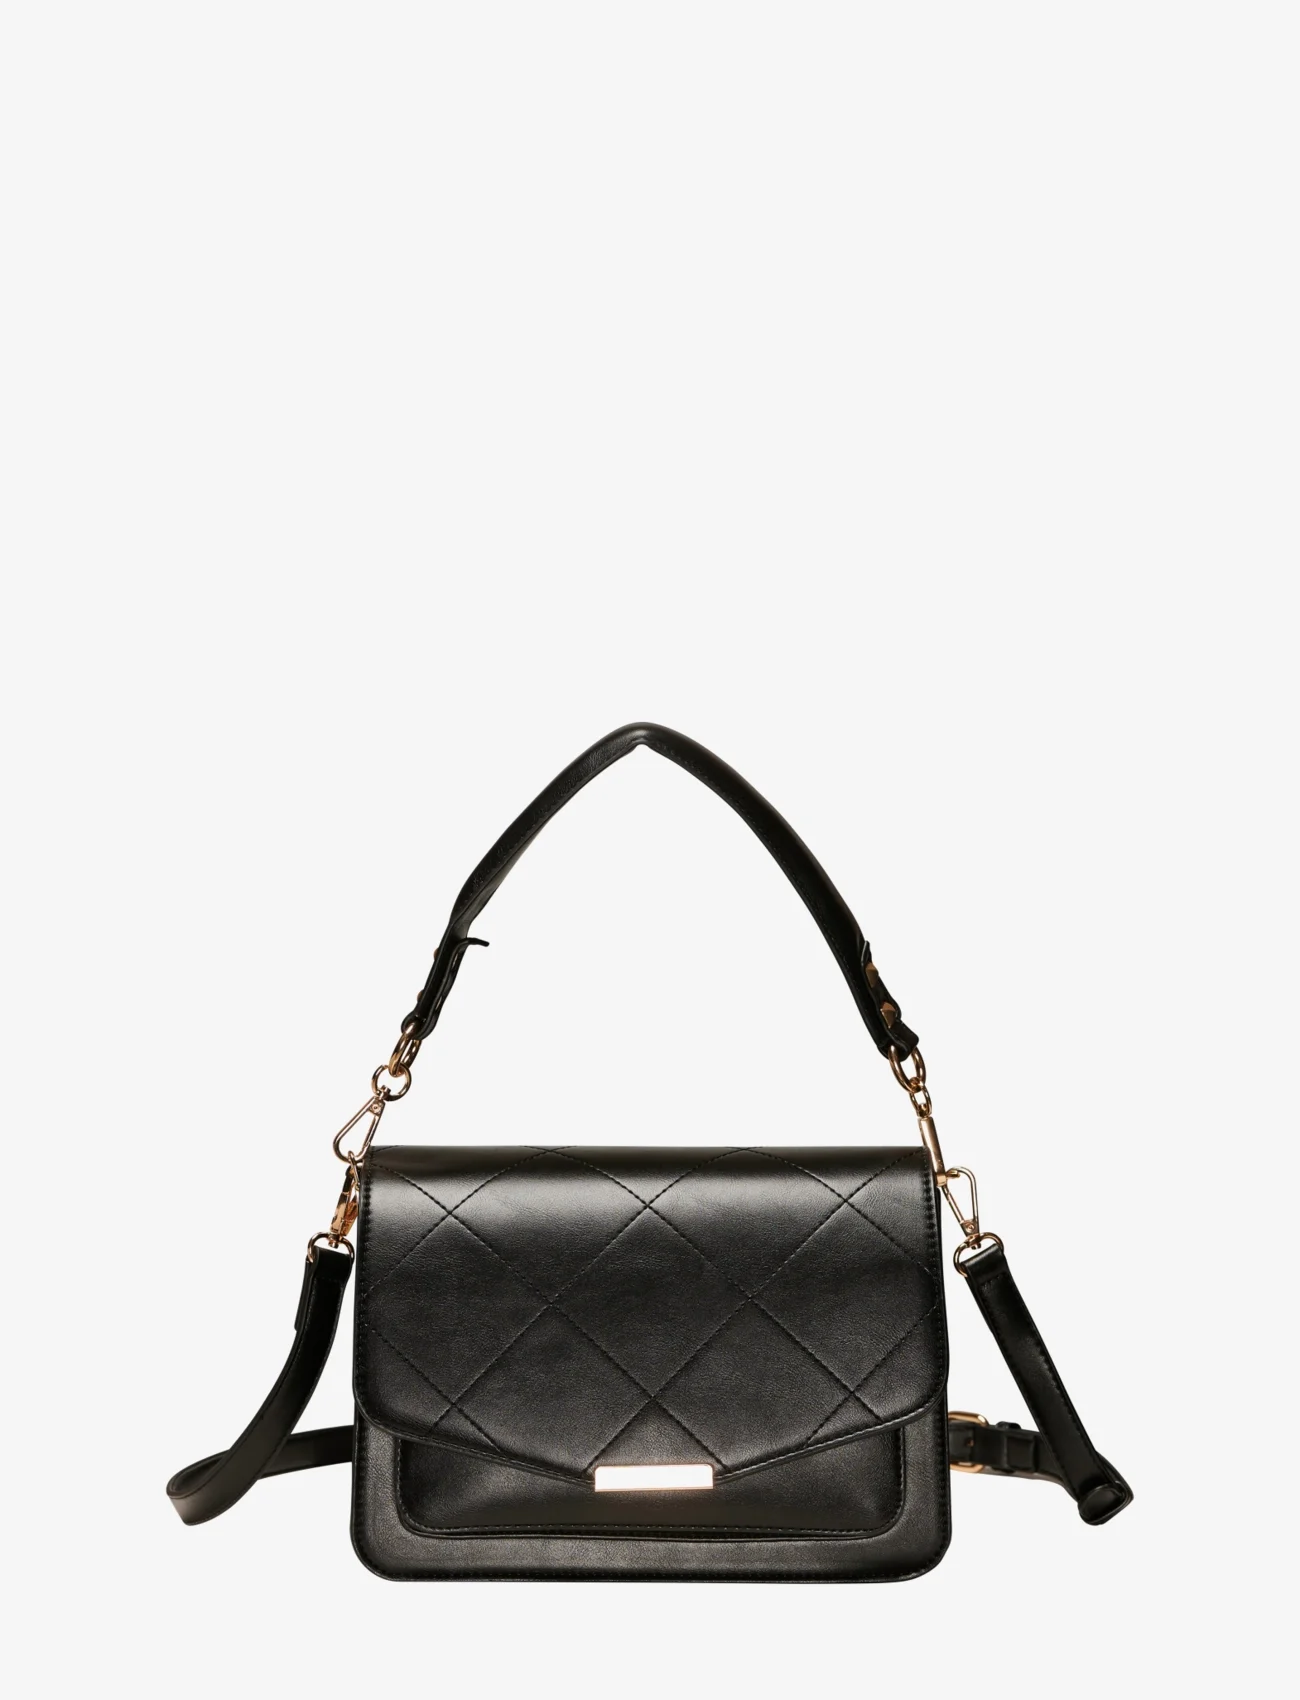 Noella - Blanca Multi Compartment Bag - festtøj til outletpriser - black leather look - 1